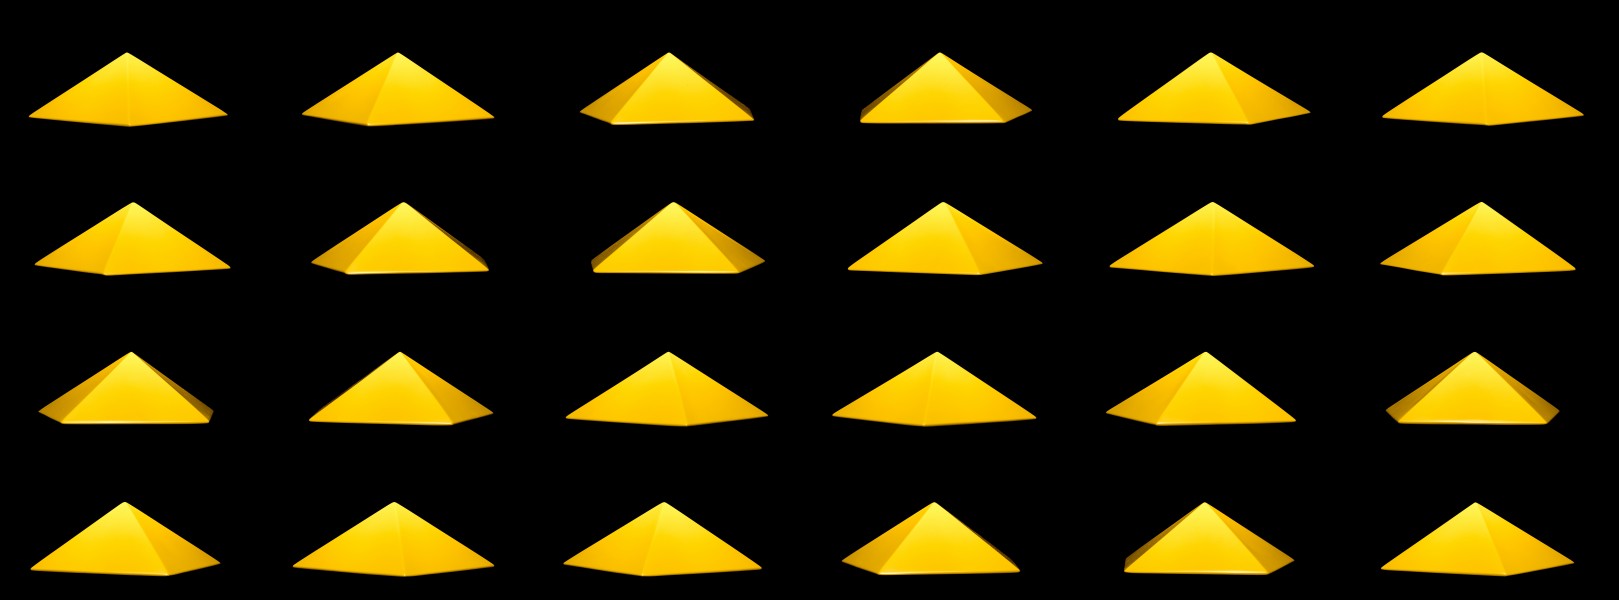 Pirâmide pentagonal